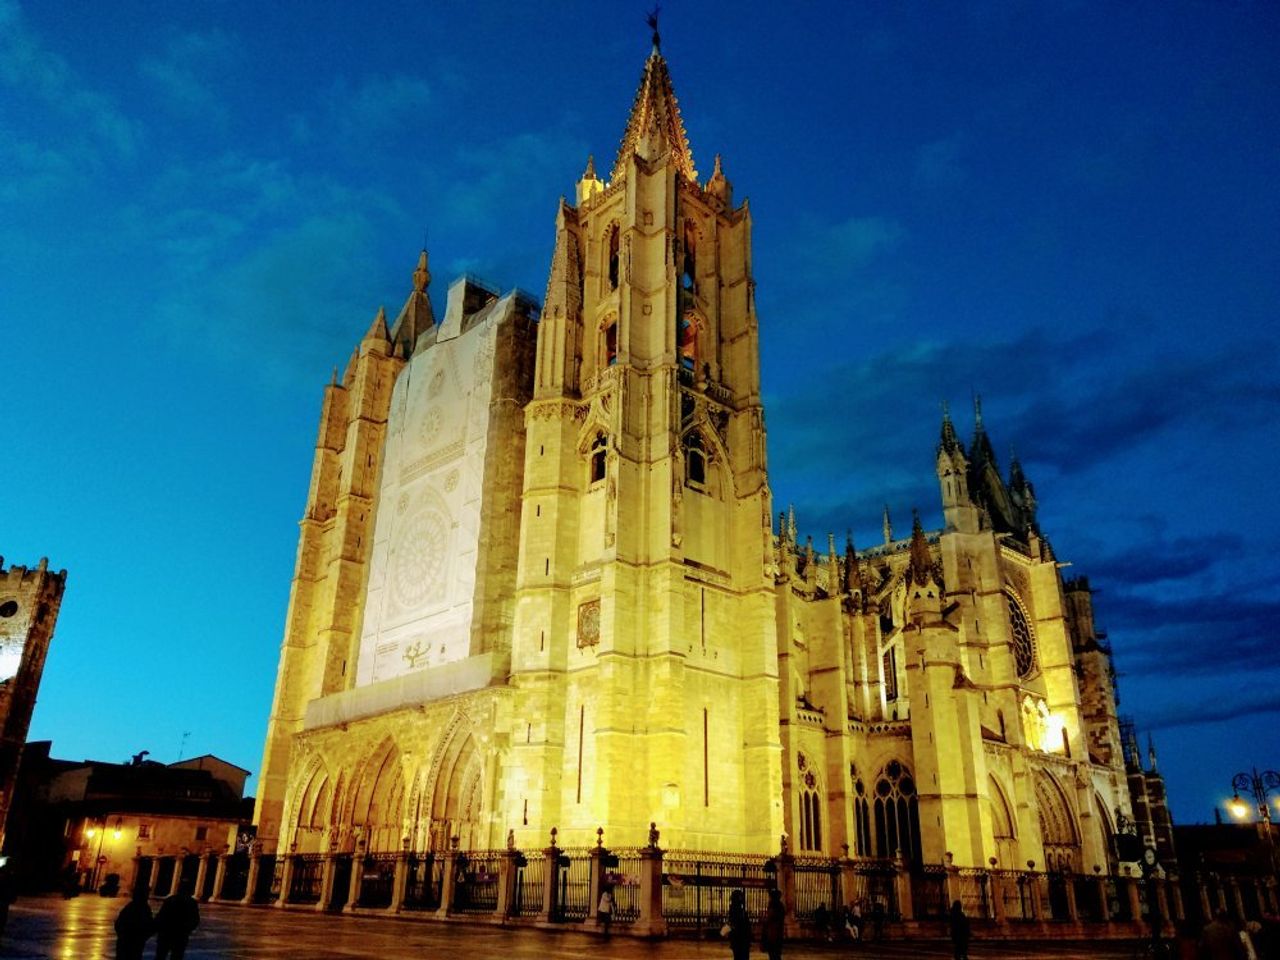 Ontdek de majestueuze schoonheid van de kathedraal van León.